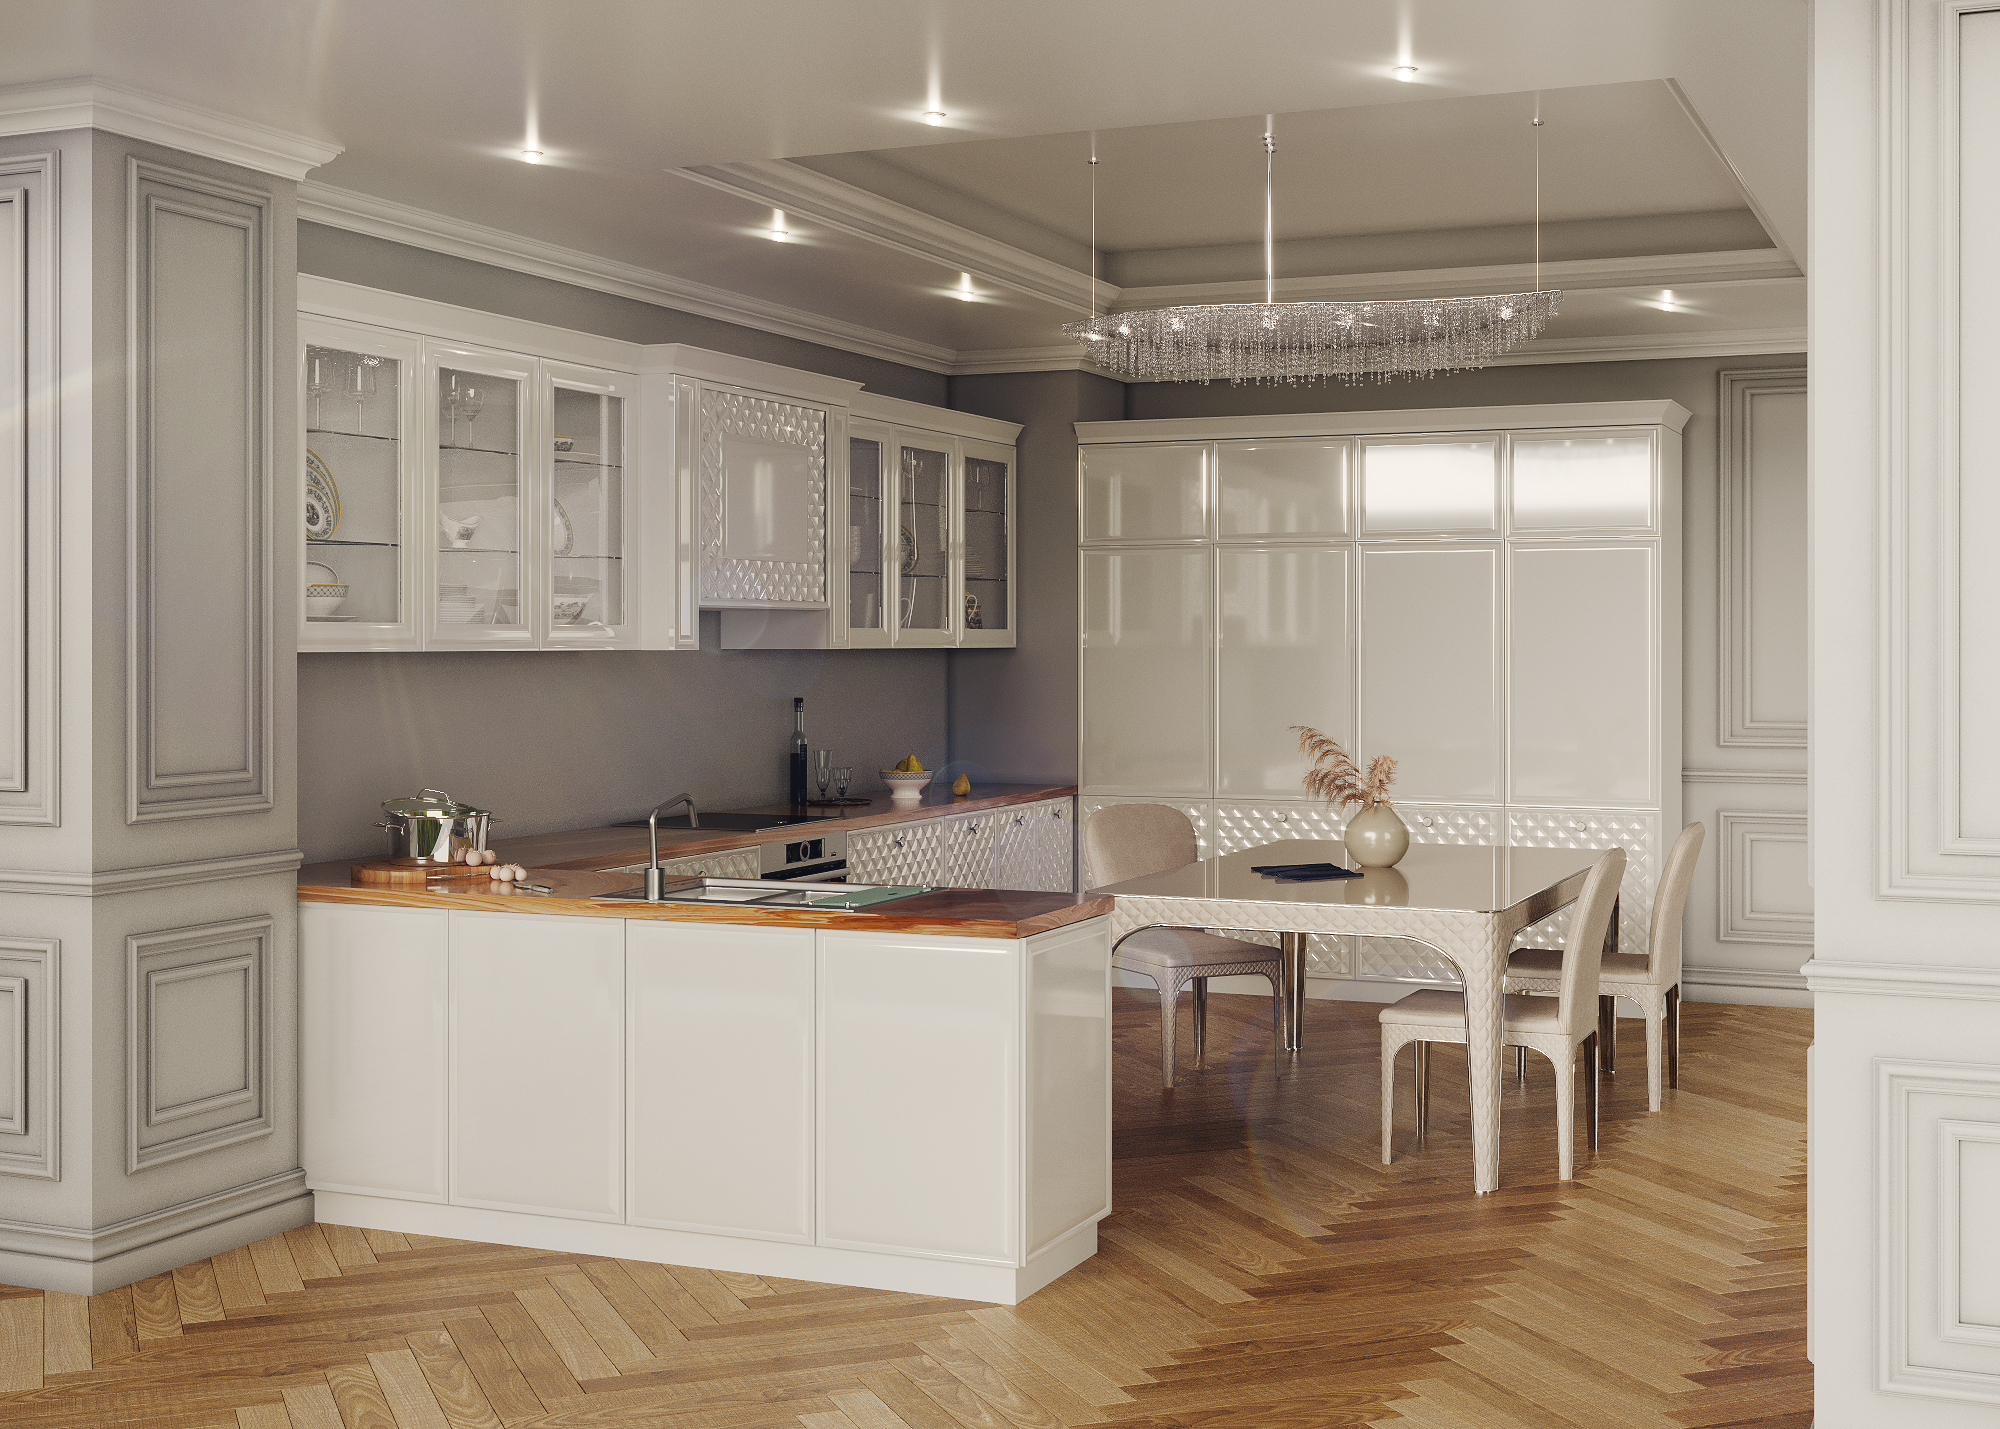 Cozinha clássica em 3d max corona render imagem